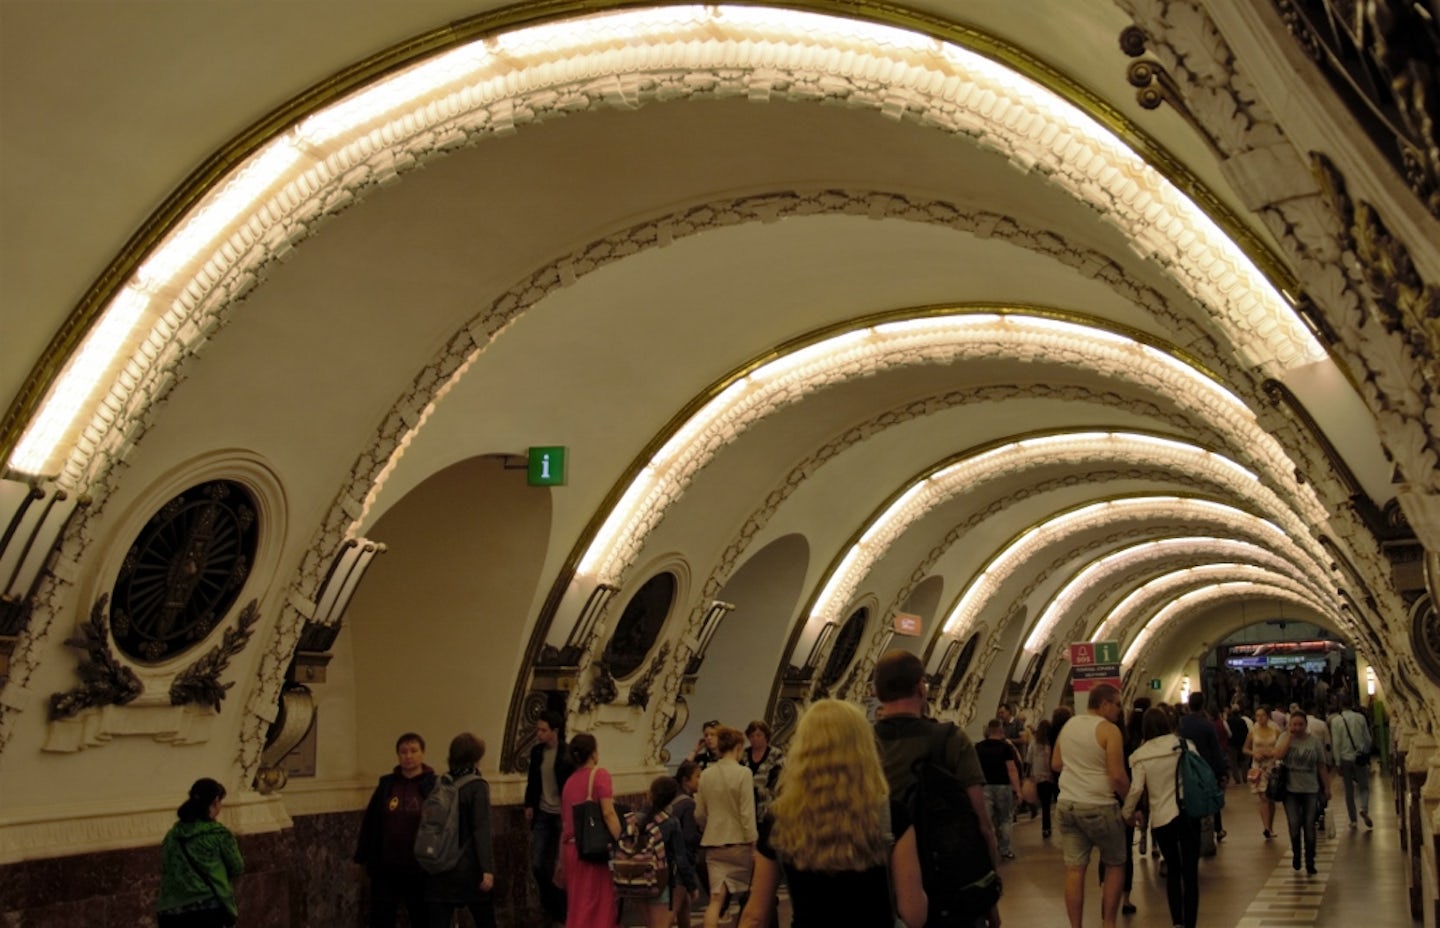 St Petersburg in the underground